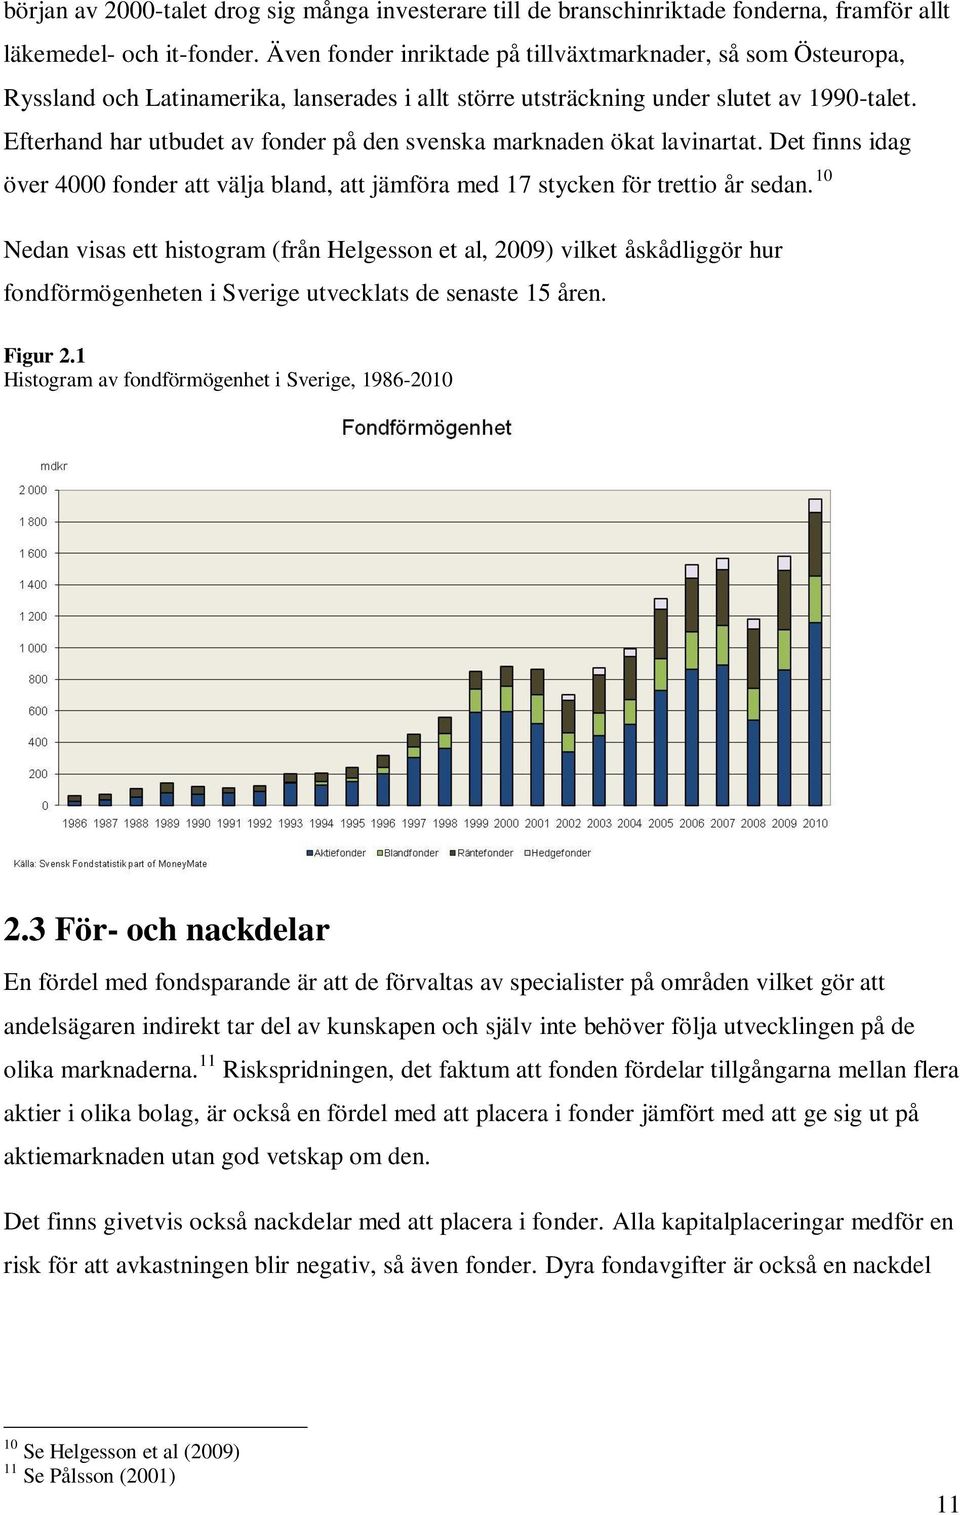 Efterhand har utbudet av fonder på den svenska marknaden ökat lavinartat. Det finns idag över 4000 fonder att välja bland, att jämföra med 17 stycken för trettio år sedan.